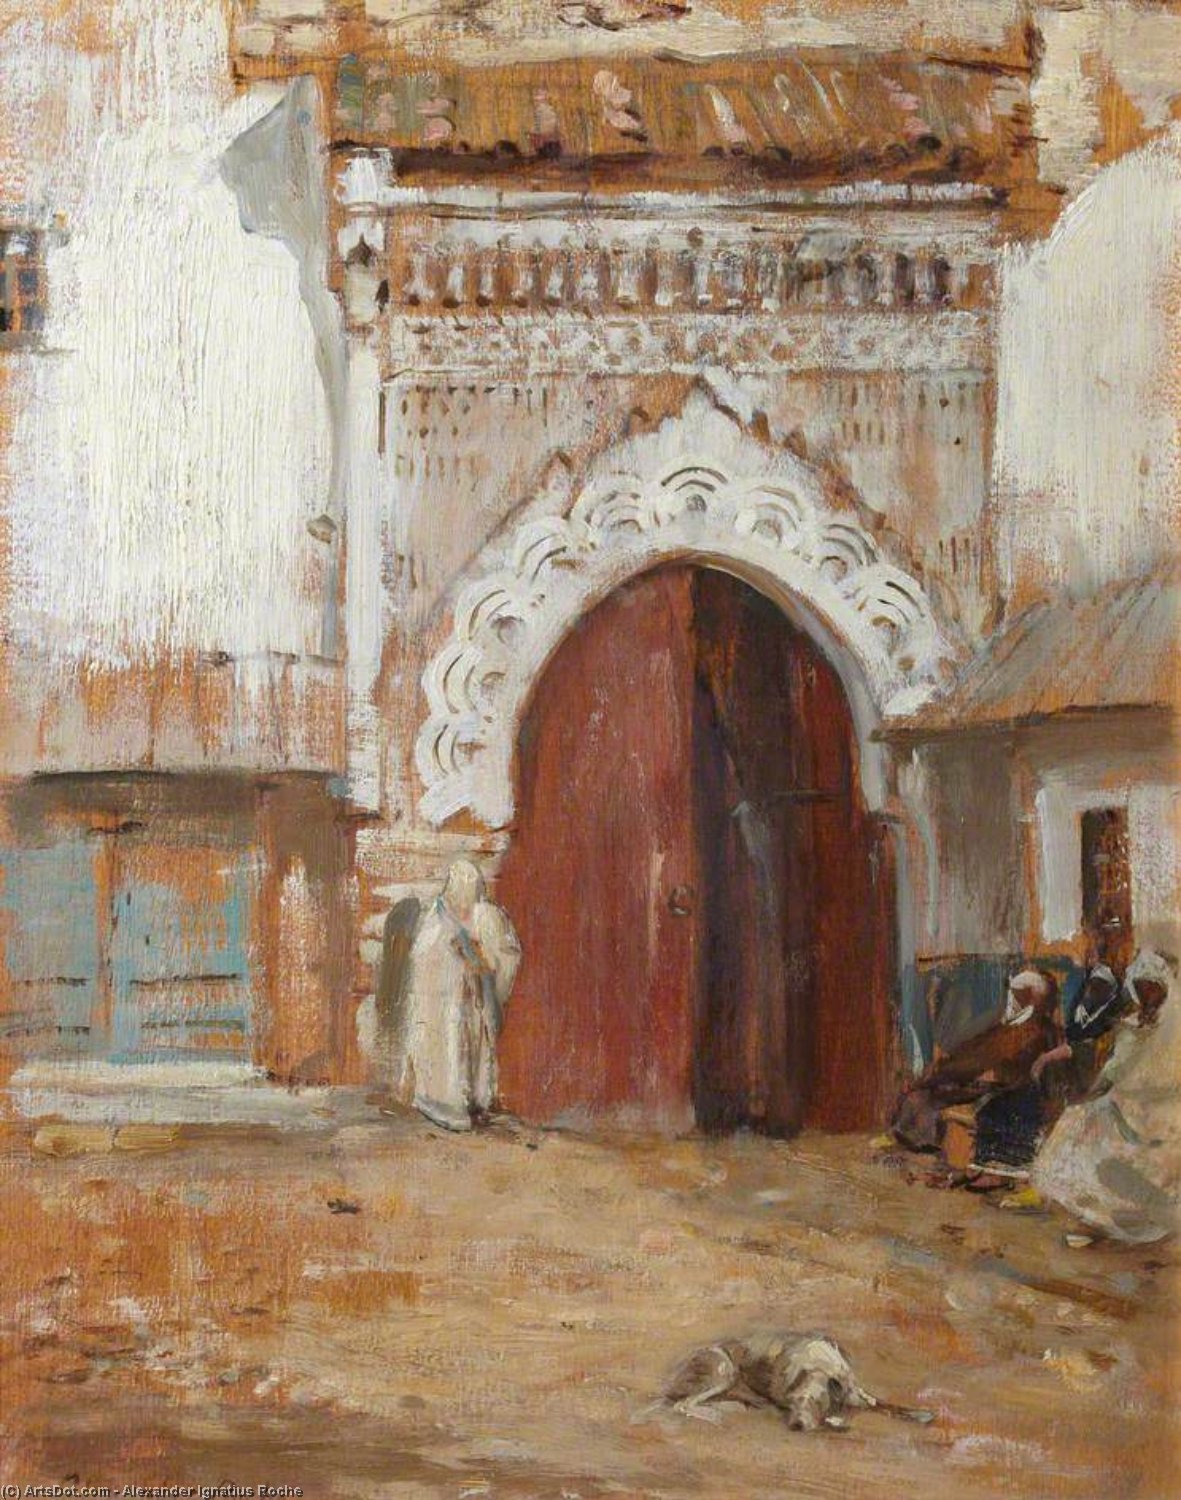 WikiOO.org - Encyclopedia of Fine Arts - Malba, Artwork Alexander Ignatius Roche - The Prison Gate, Mogador, Morocco